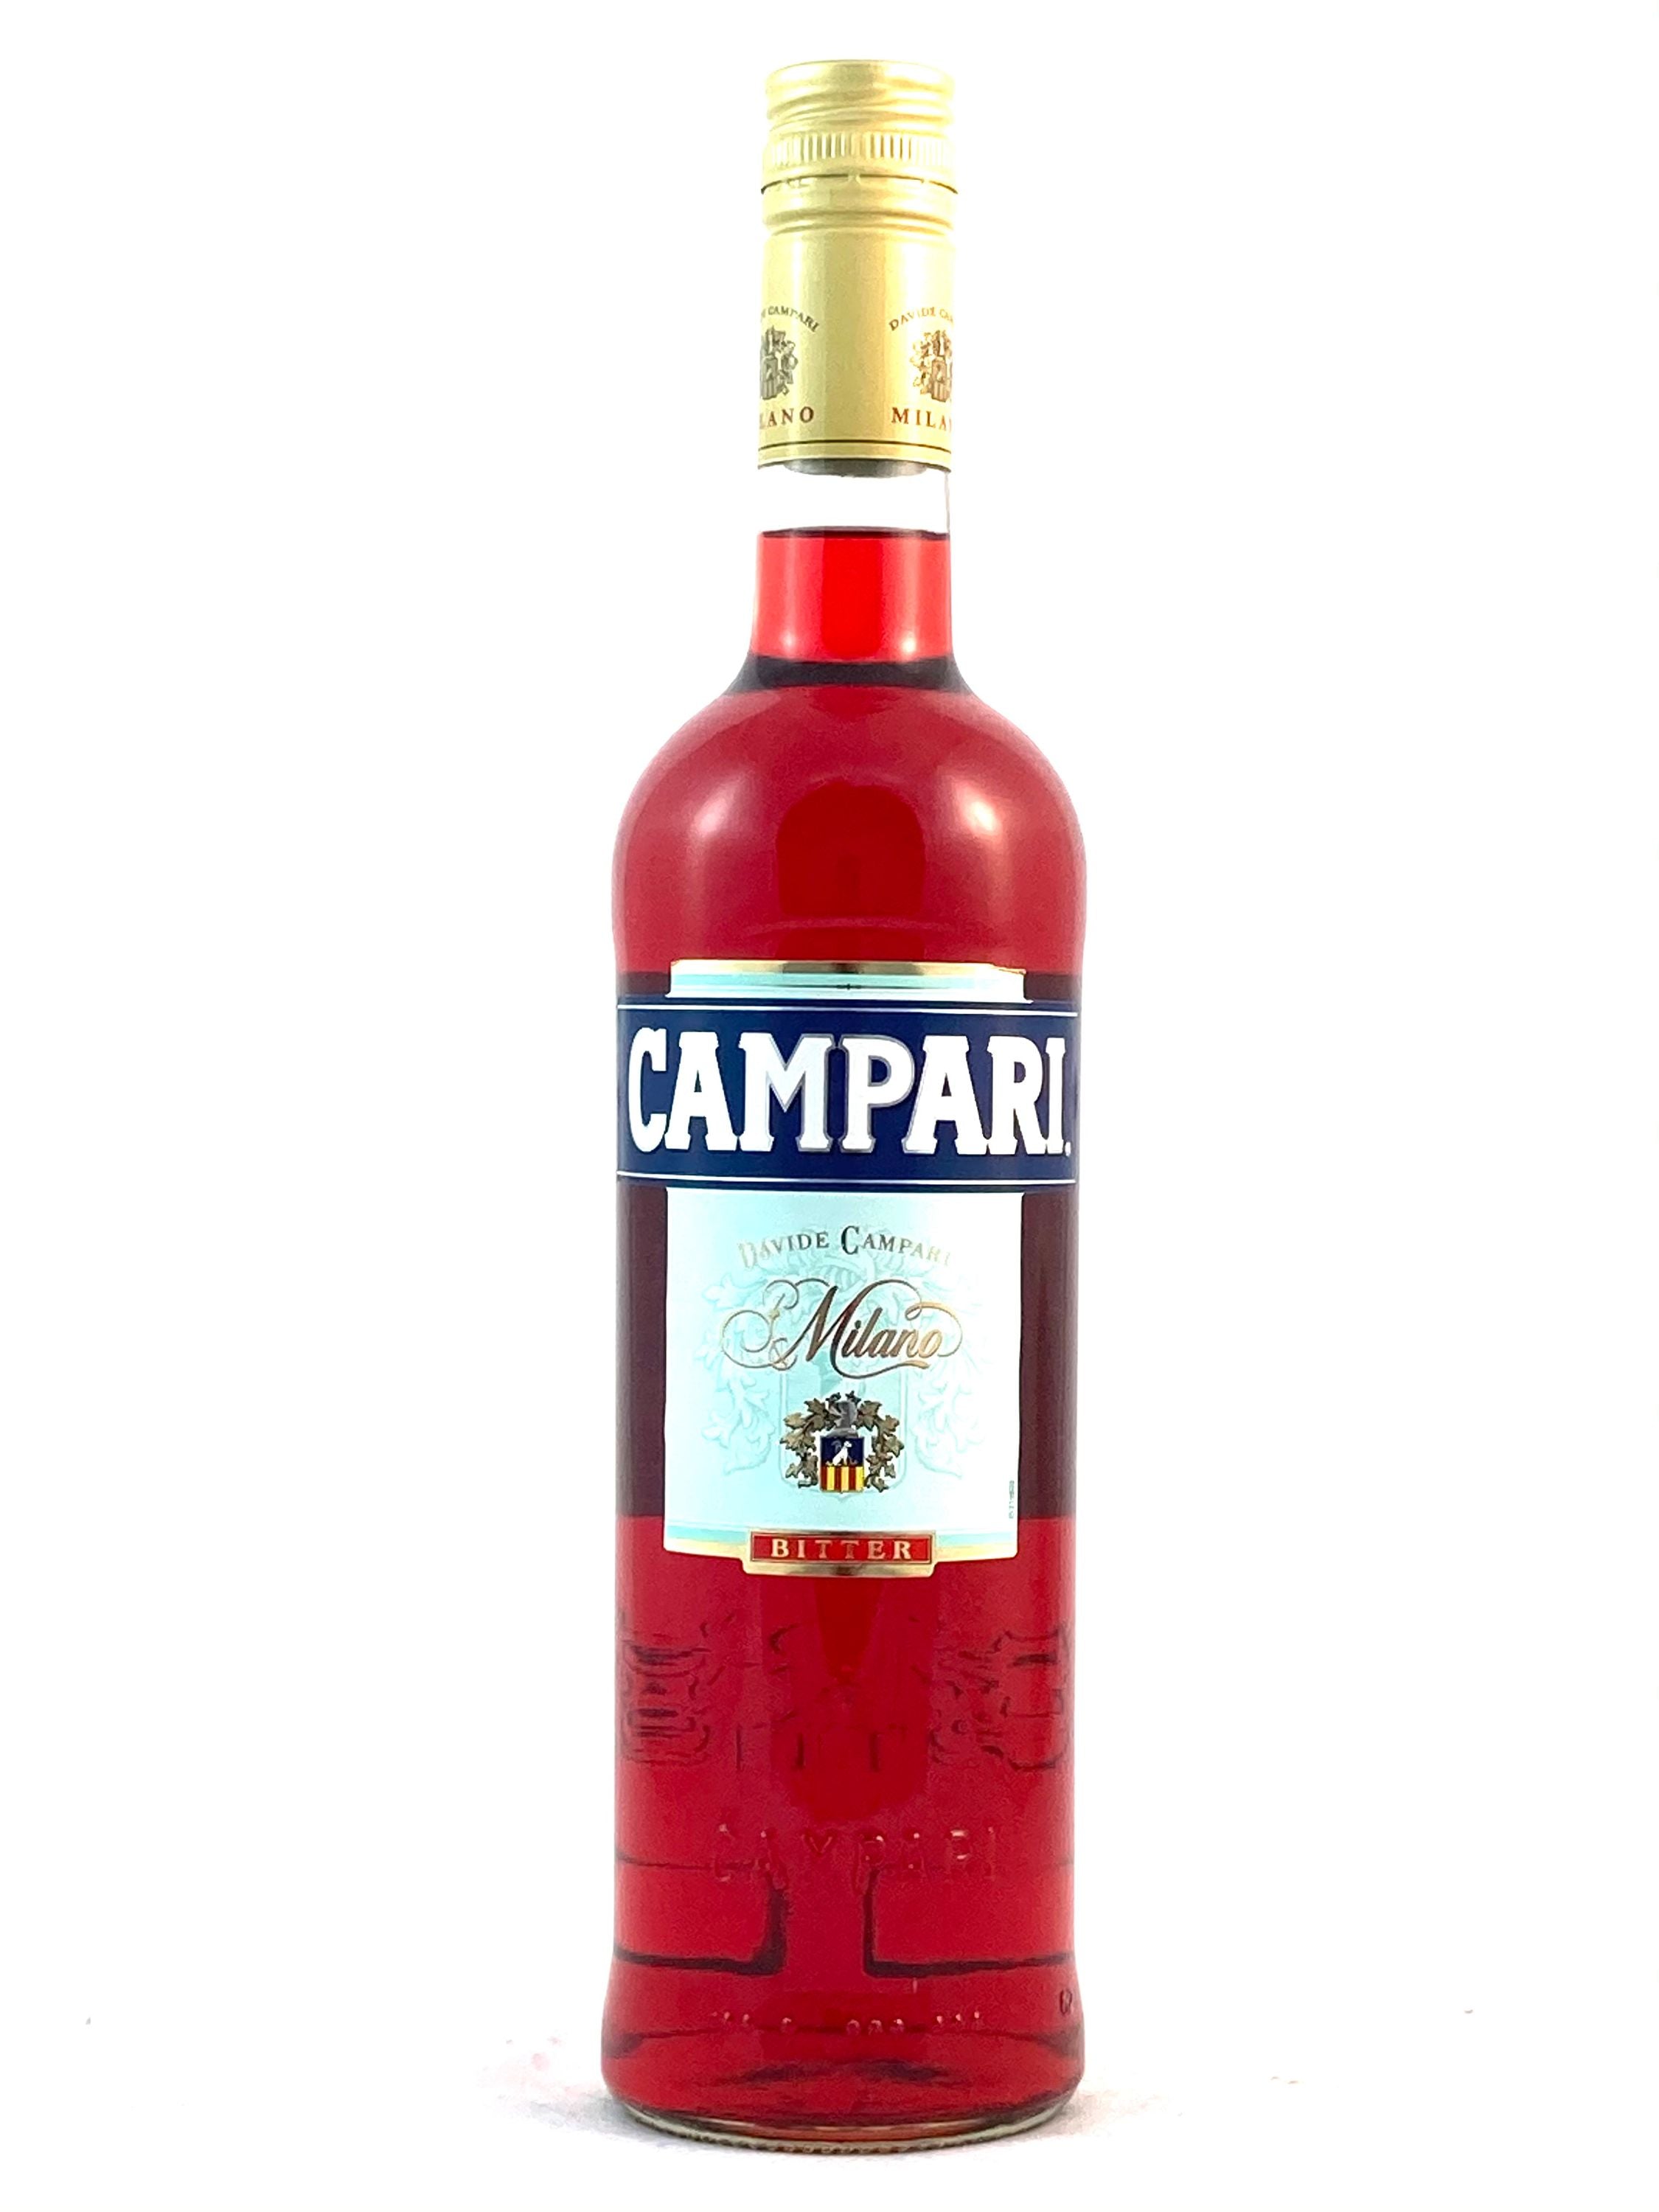 Campari Bitter 0.7l, alc. 25% by volume, aperitif Italy